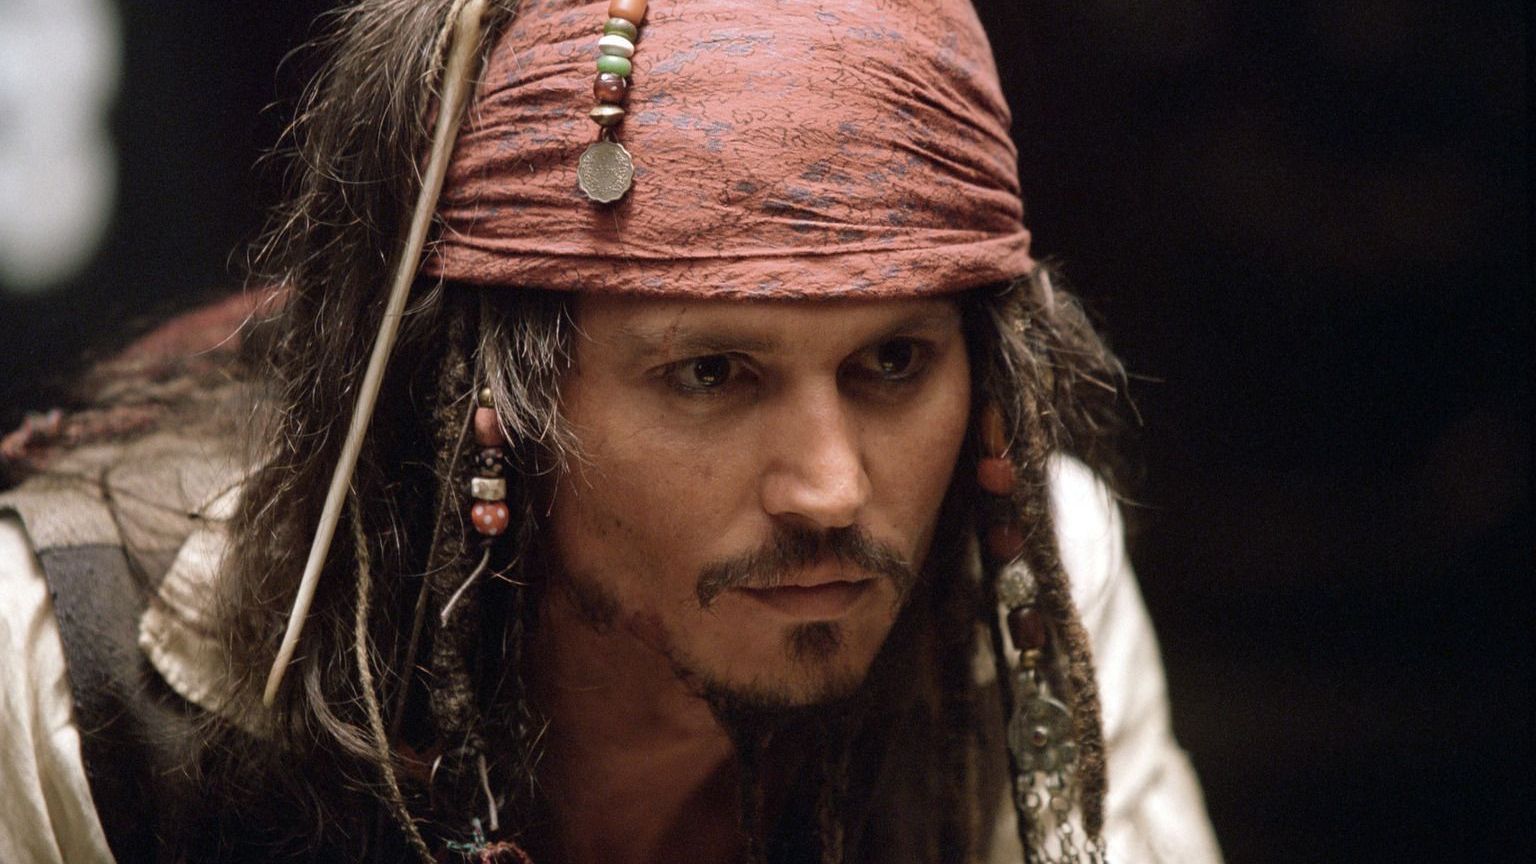 Die Suche nach einem neuen Schiff führt den Piraten Captain Jack Sparrow (Johnny Depp) nach Port Royal, wo er sich mit einem neuen Schiff, der Inter... (Kopie)